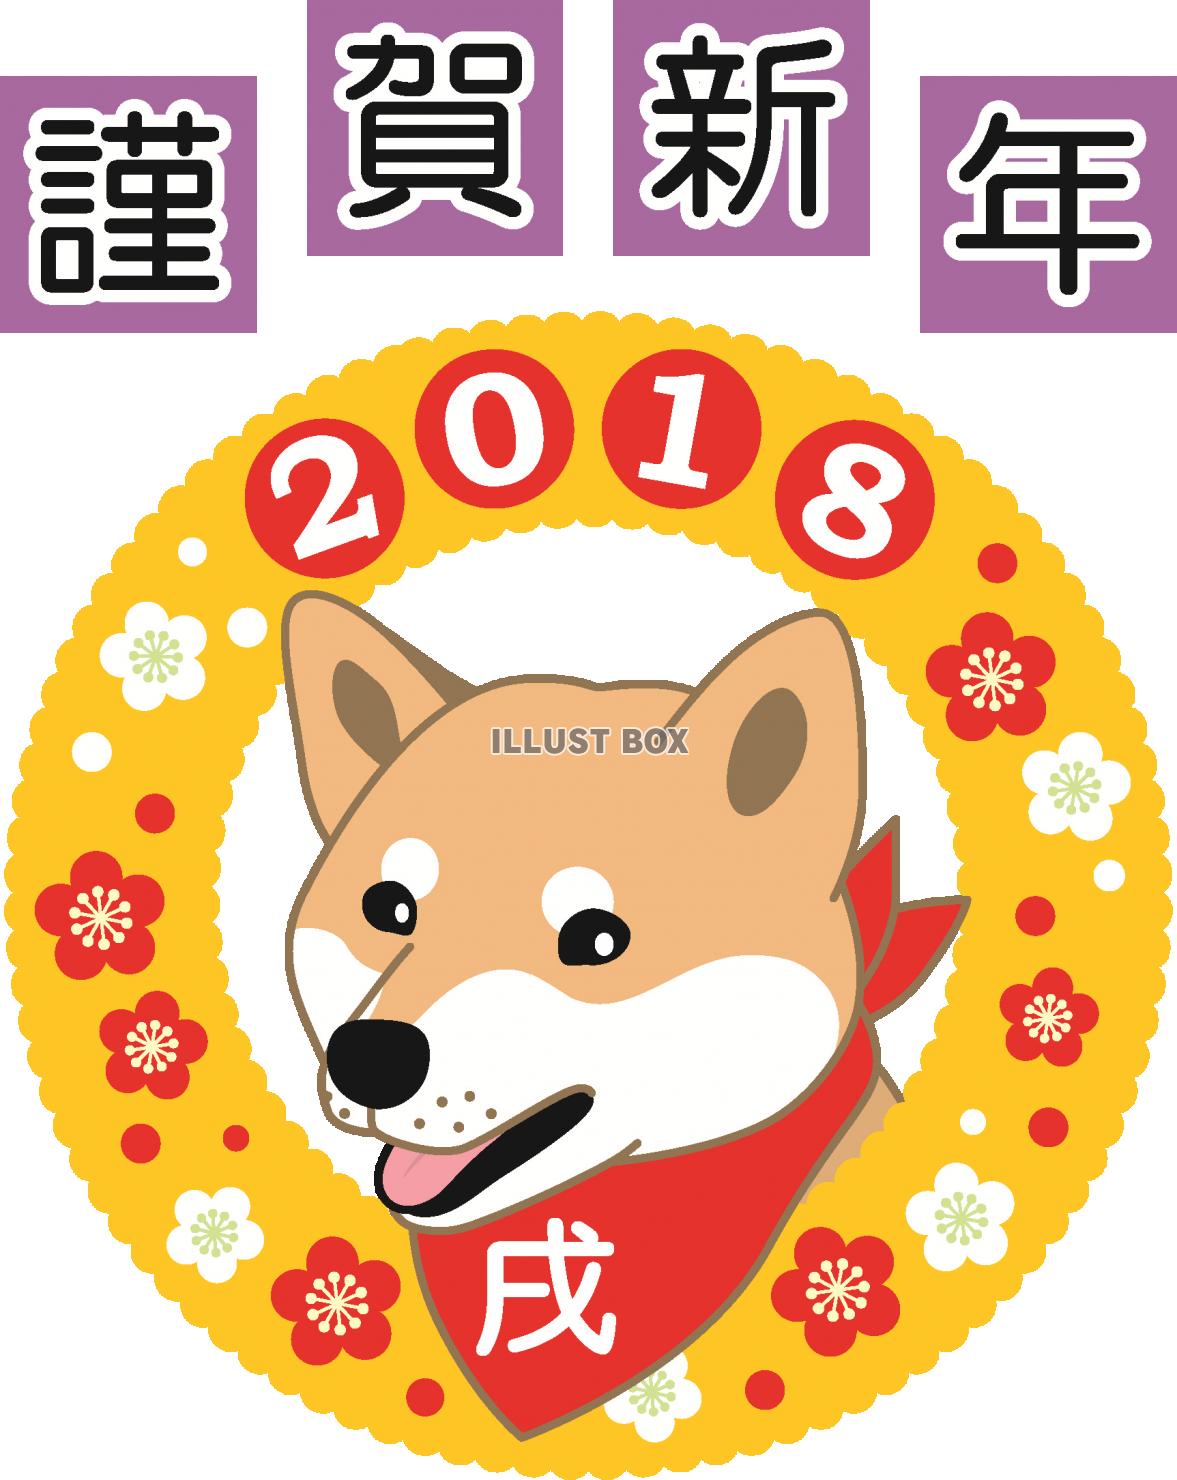 2018年年賀状素材ー柴犬が笑った顔のイラスト